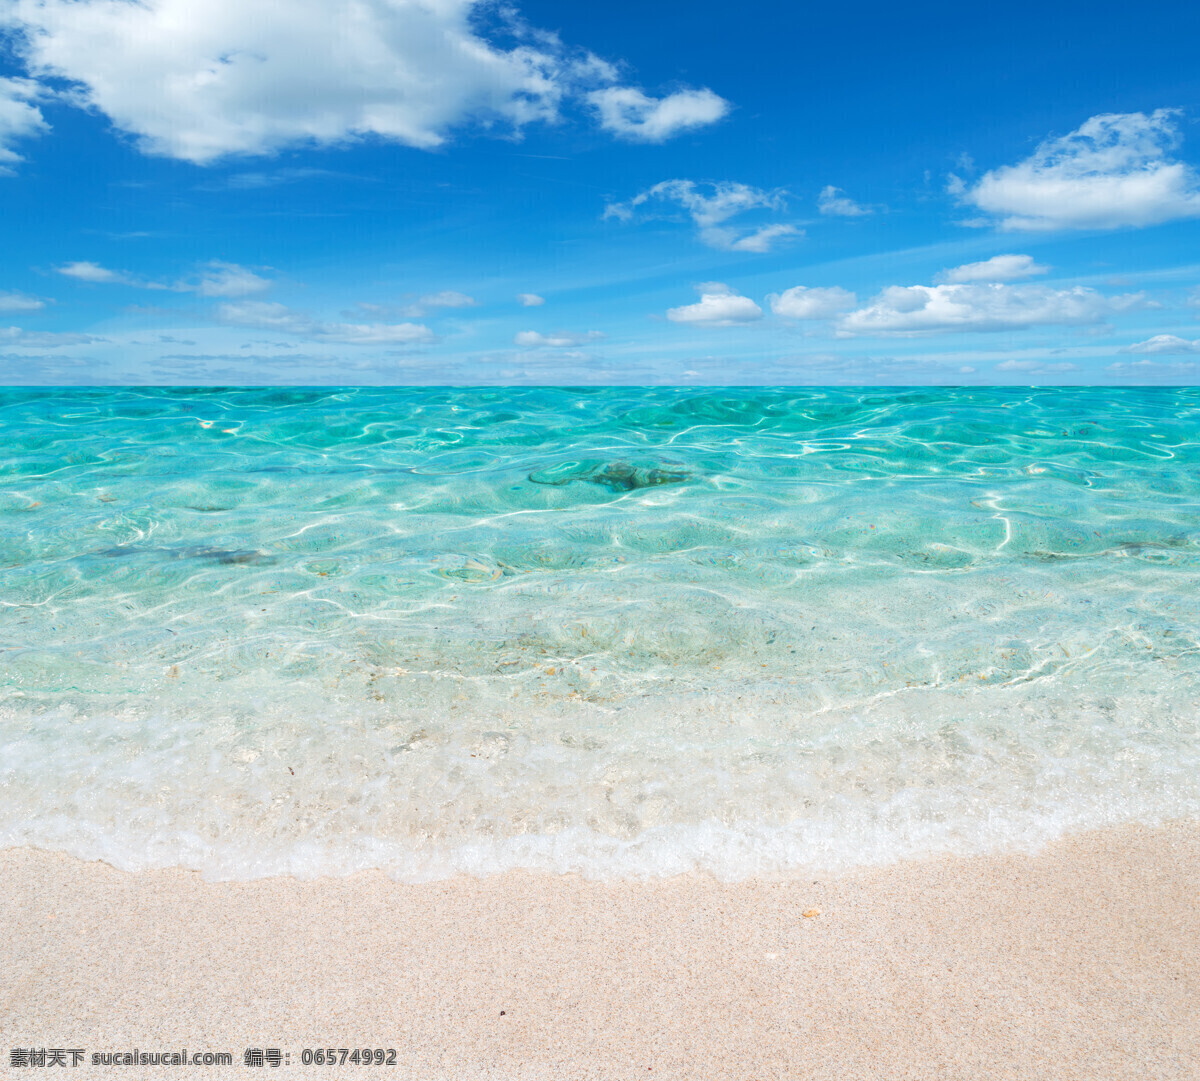 波光 鳞鳞 海水 波光鳞鳞 大海 海边 浪花 海浪 海滩 沙滩 蓝天白云 风景 海洋海边 自然景观 青色 天蓝色